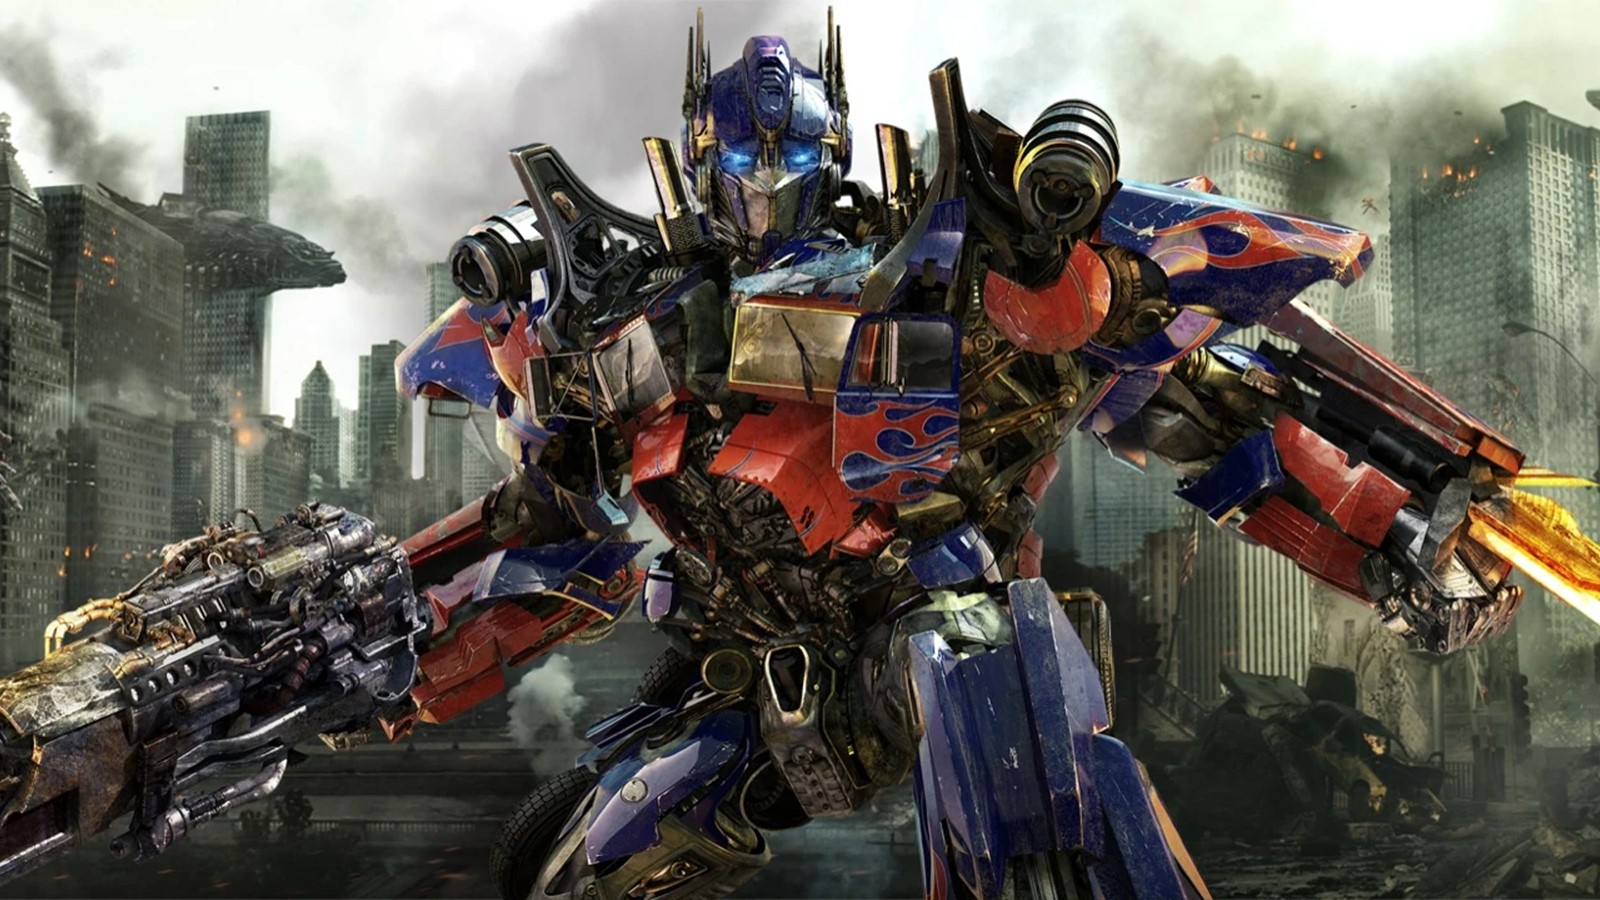 Transformers: Il Risveglio, la voce di Optimus Prime accompagnerà i video dei fan grazie a Paramount e TikTok